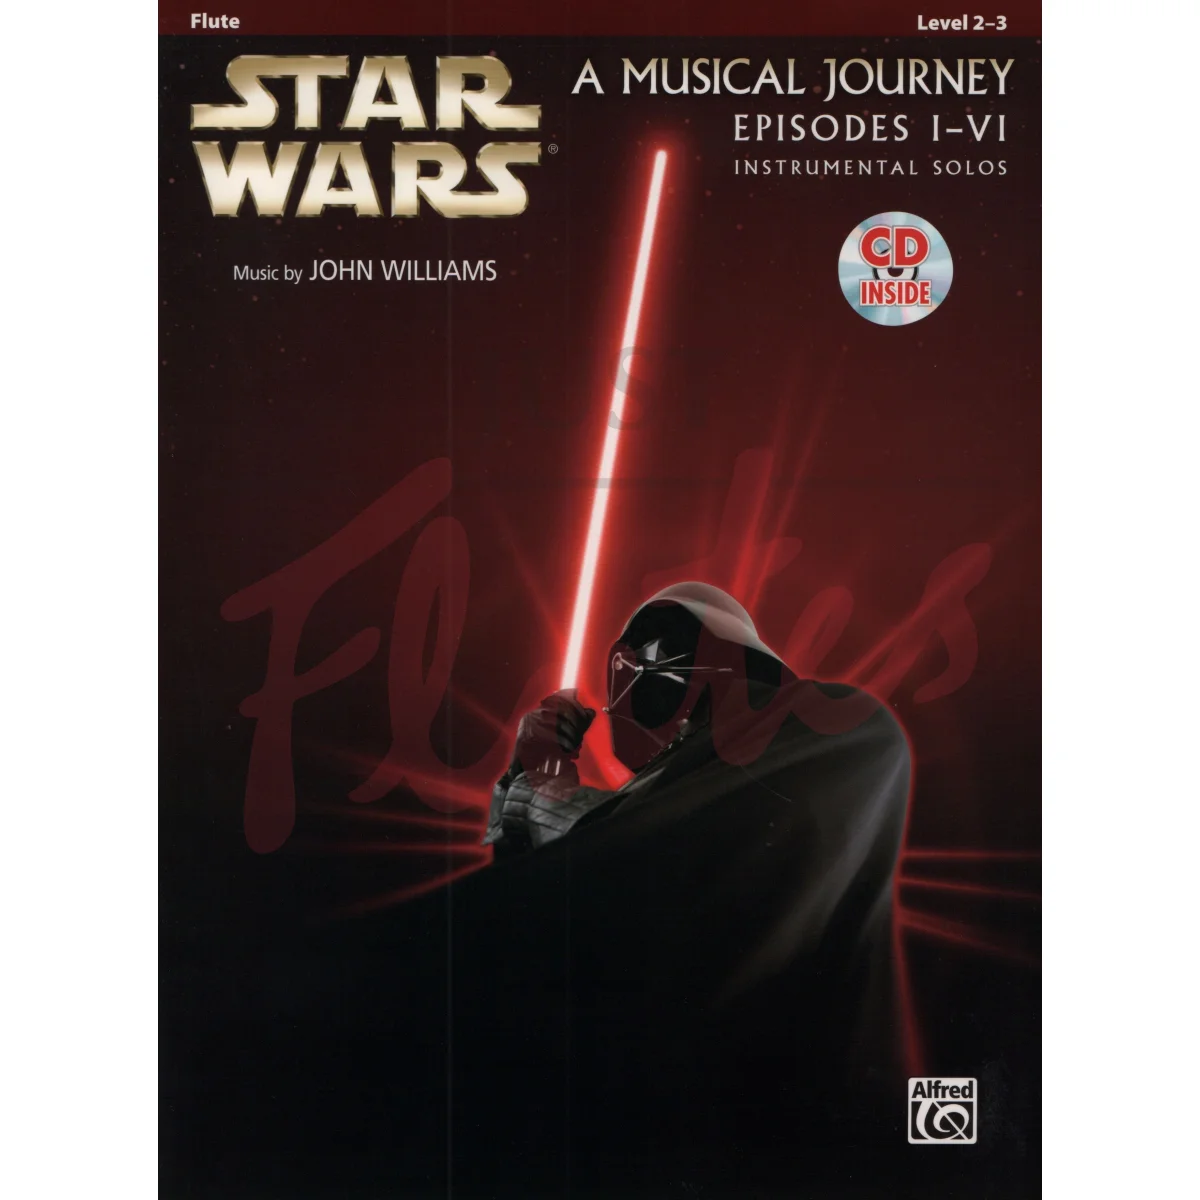 Star Wars, A Musical Journey Episodes I-VI for Flute